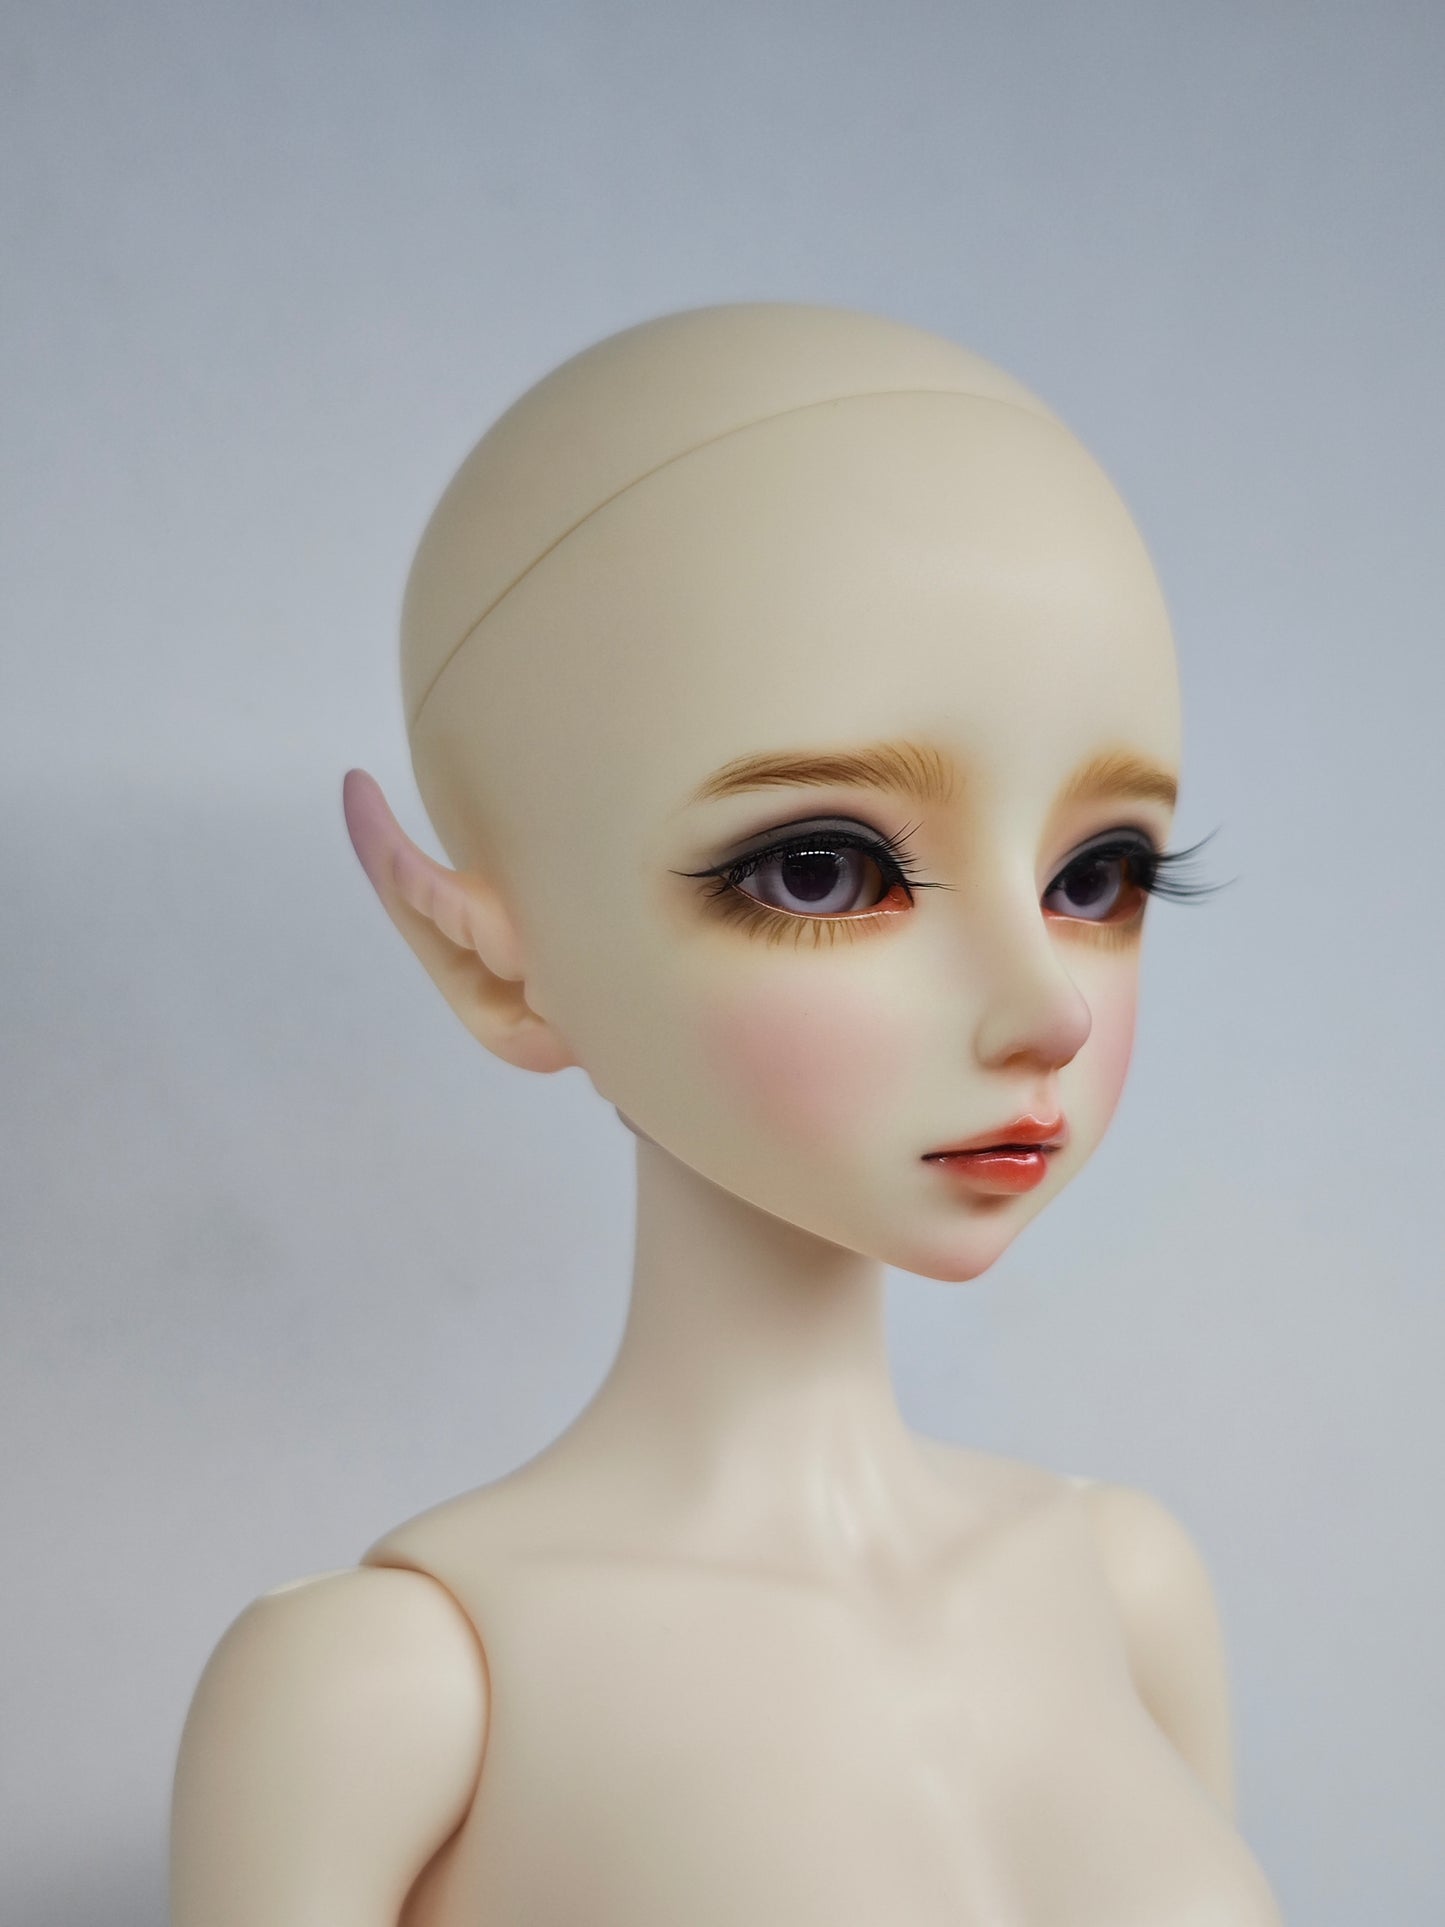 1/4 girl elf doll Elaine in normal skin with fullset